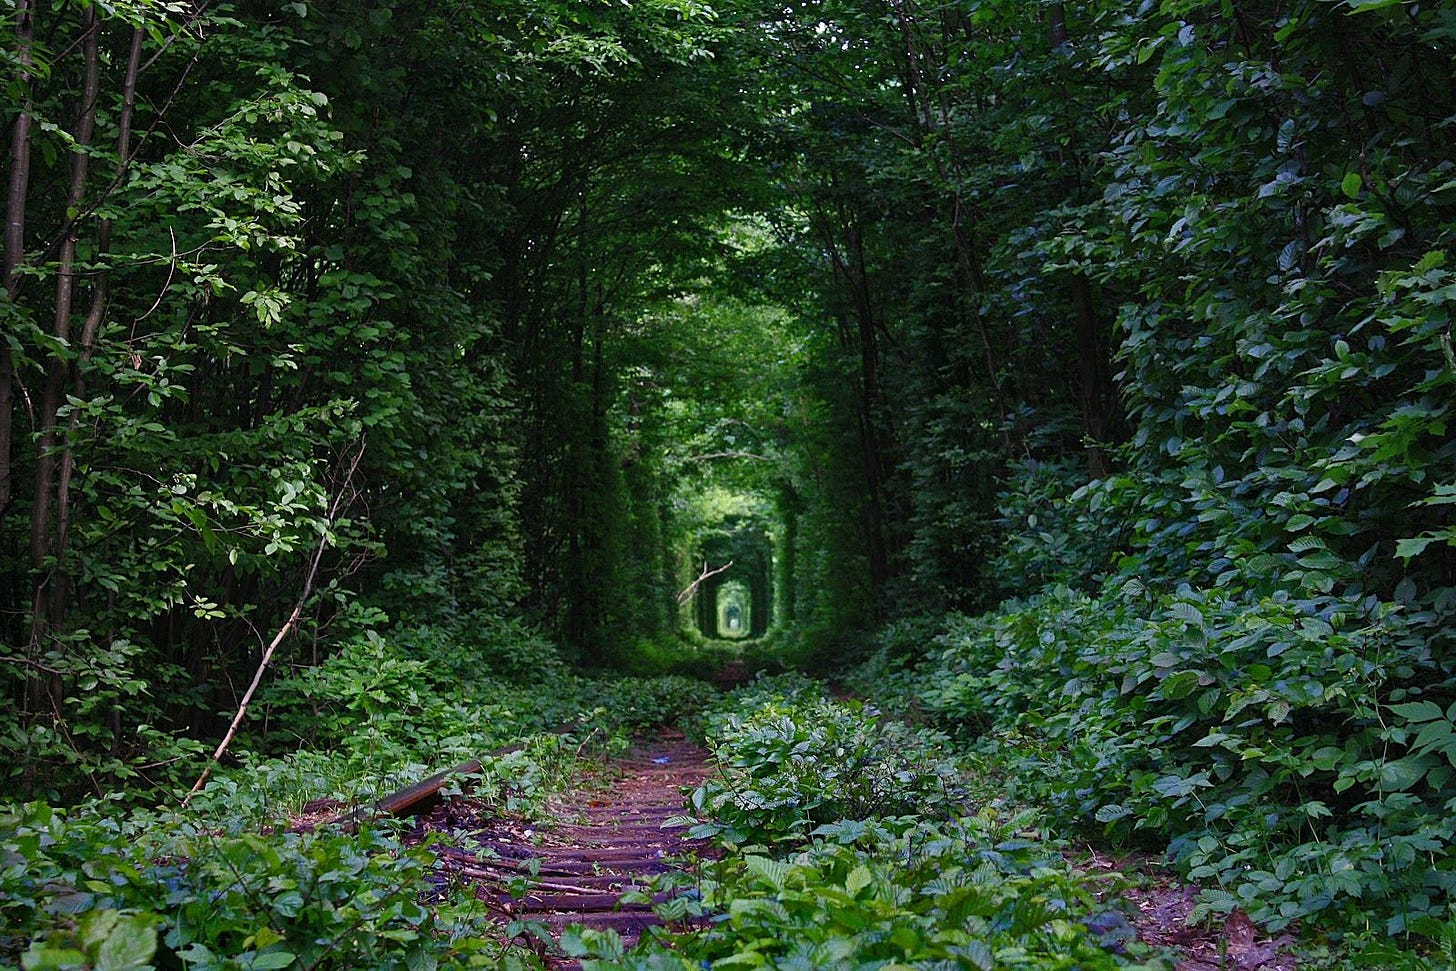 Fairy-Tale-Tunnel-of-Love-Found-in-Klevan-Ukraine-7